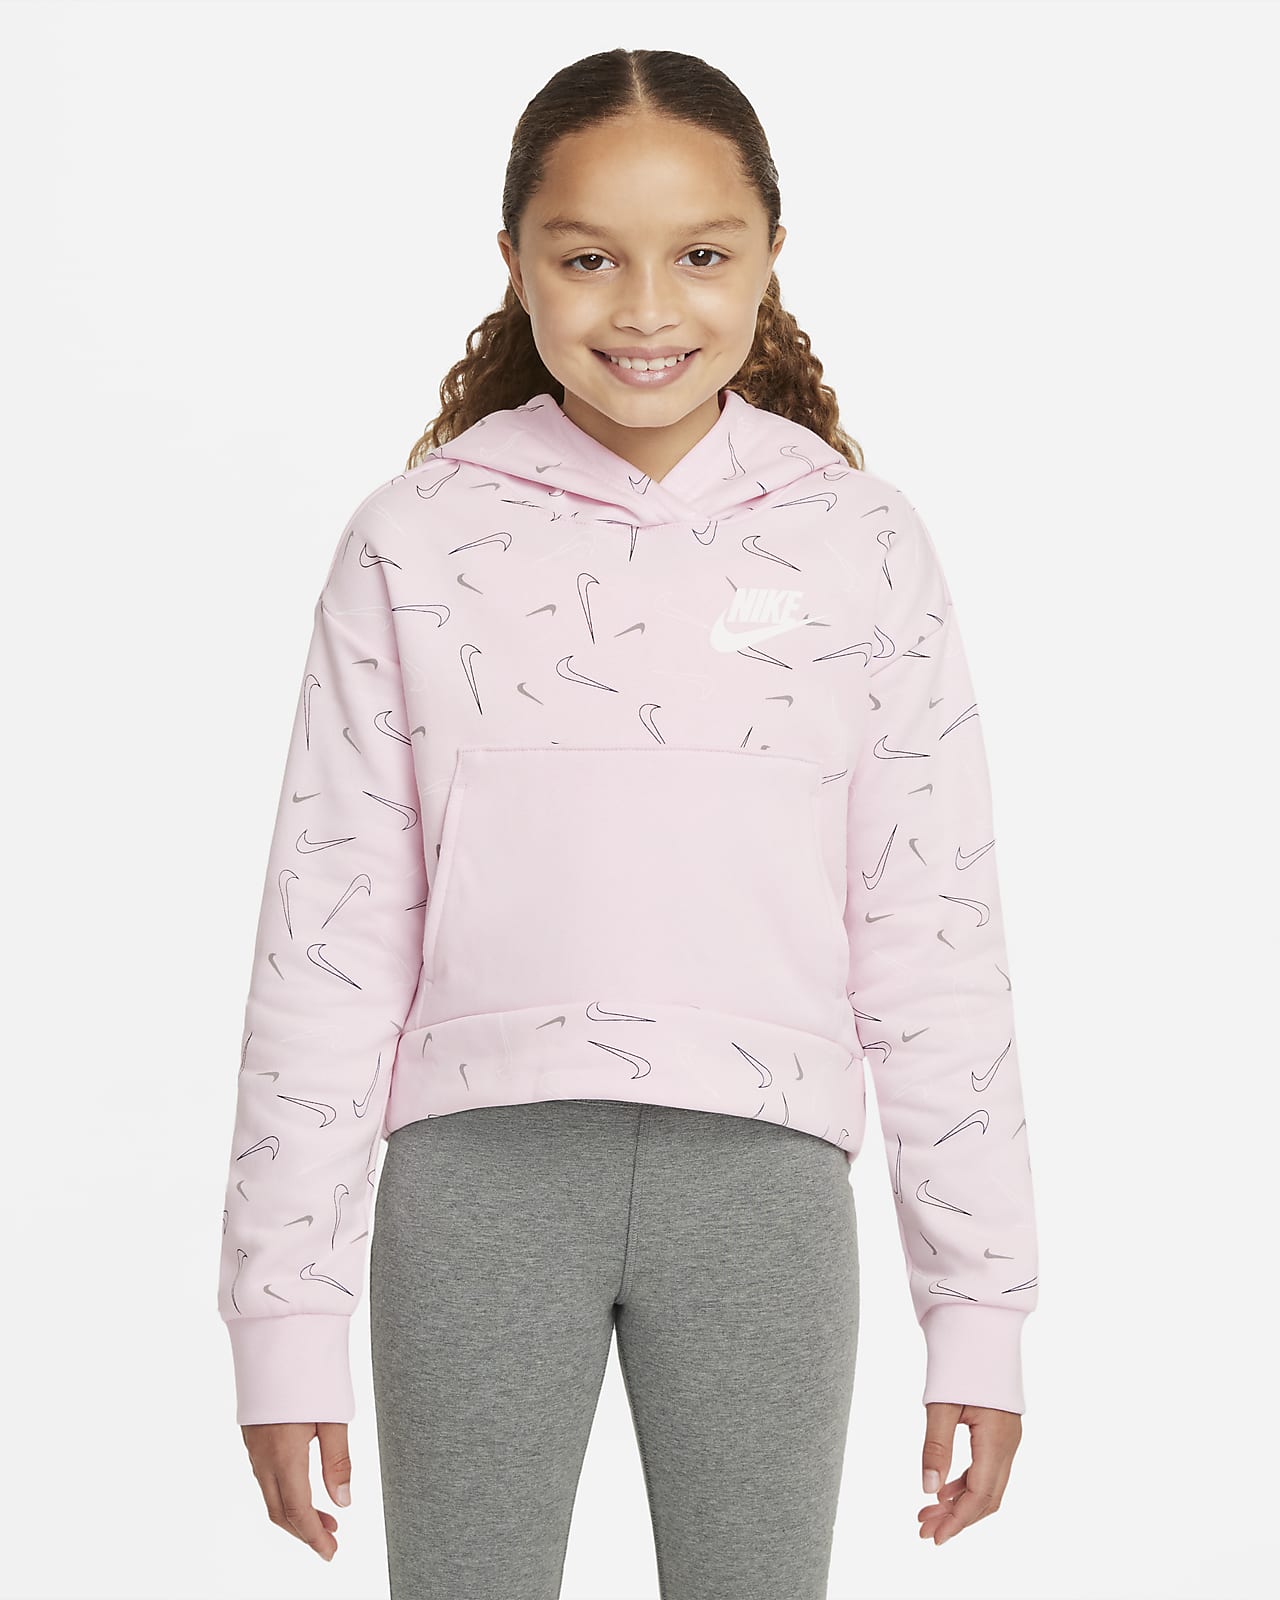 Nike Sportswear Older Kids' (Girls') Printed Fleece Hoodie